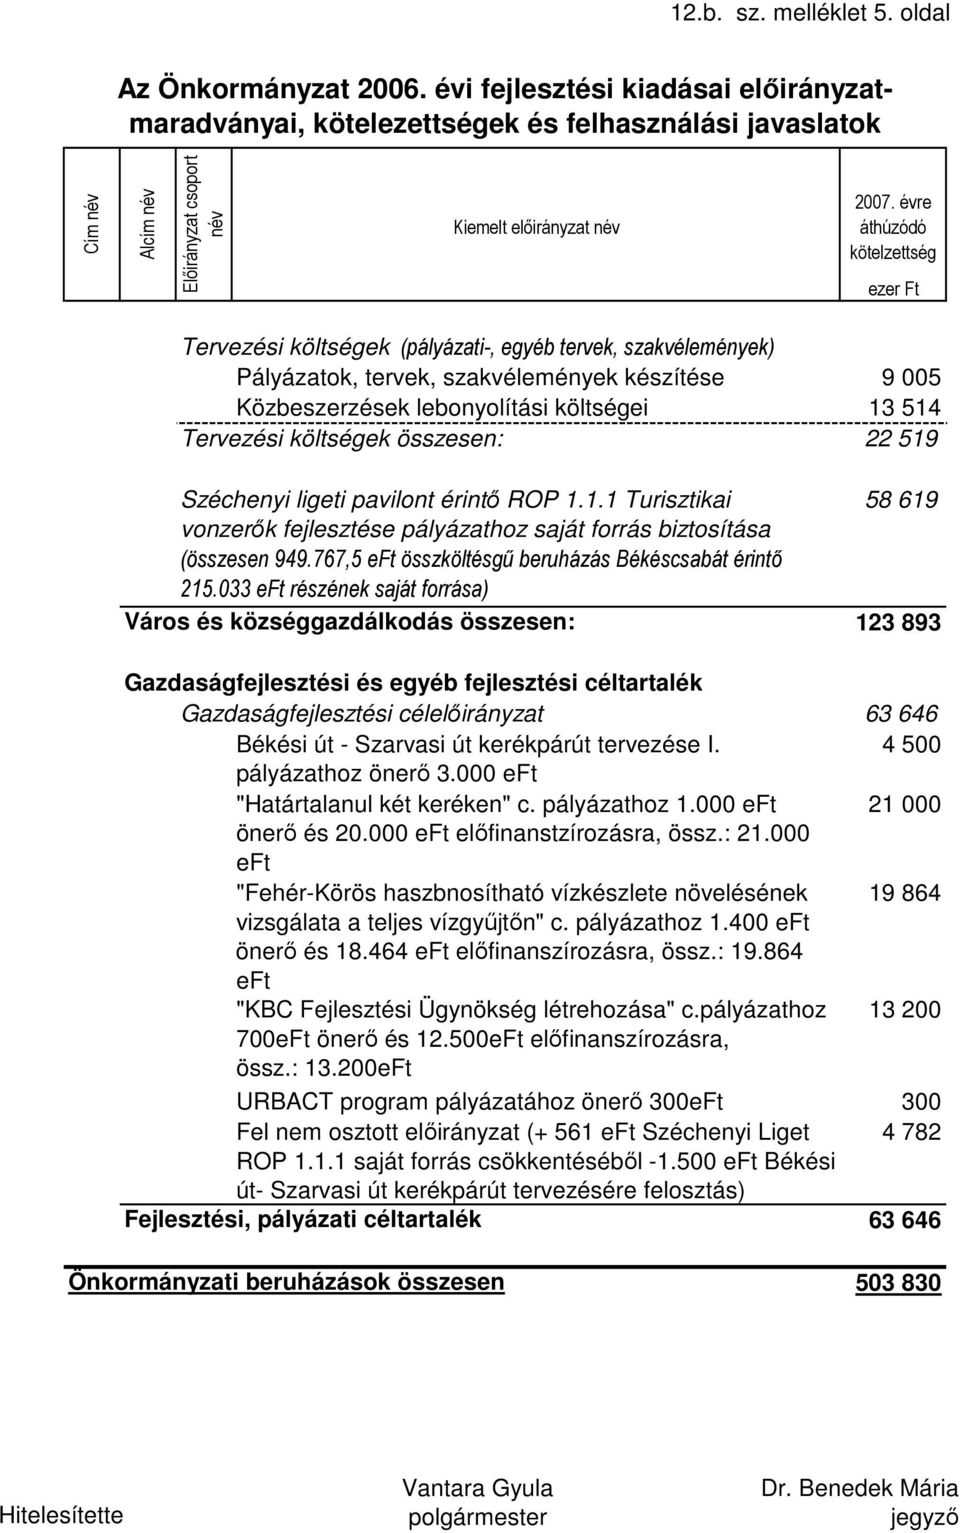 519 Széchenyi ligeti pavilont érintő ROP 1.1.1 Turisztikai 58 619 vonzerők fejlesztése pályázathoz saját forrás biztosítása (összesen 949.767,5 eft összköltésgű beruházás Békéscsabát érintő 215.